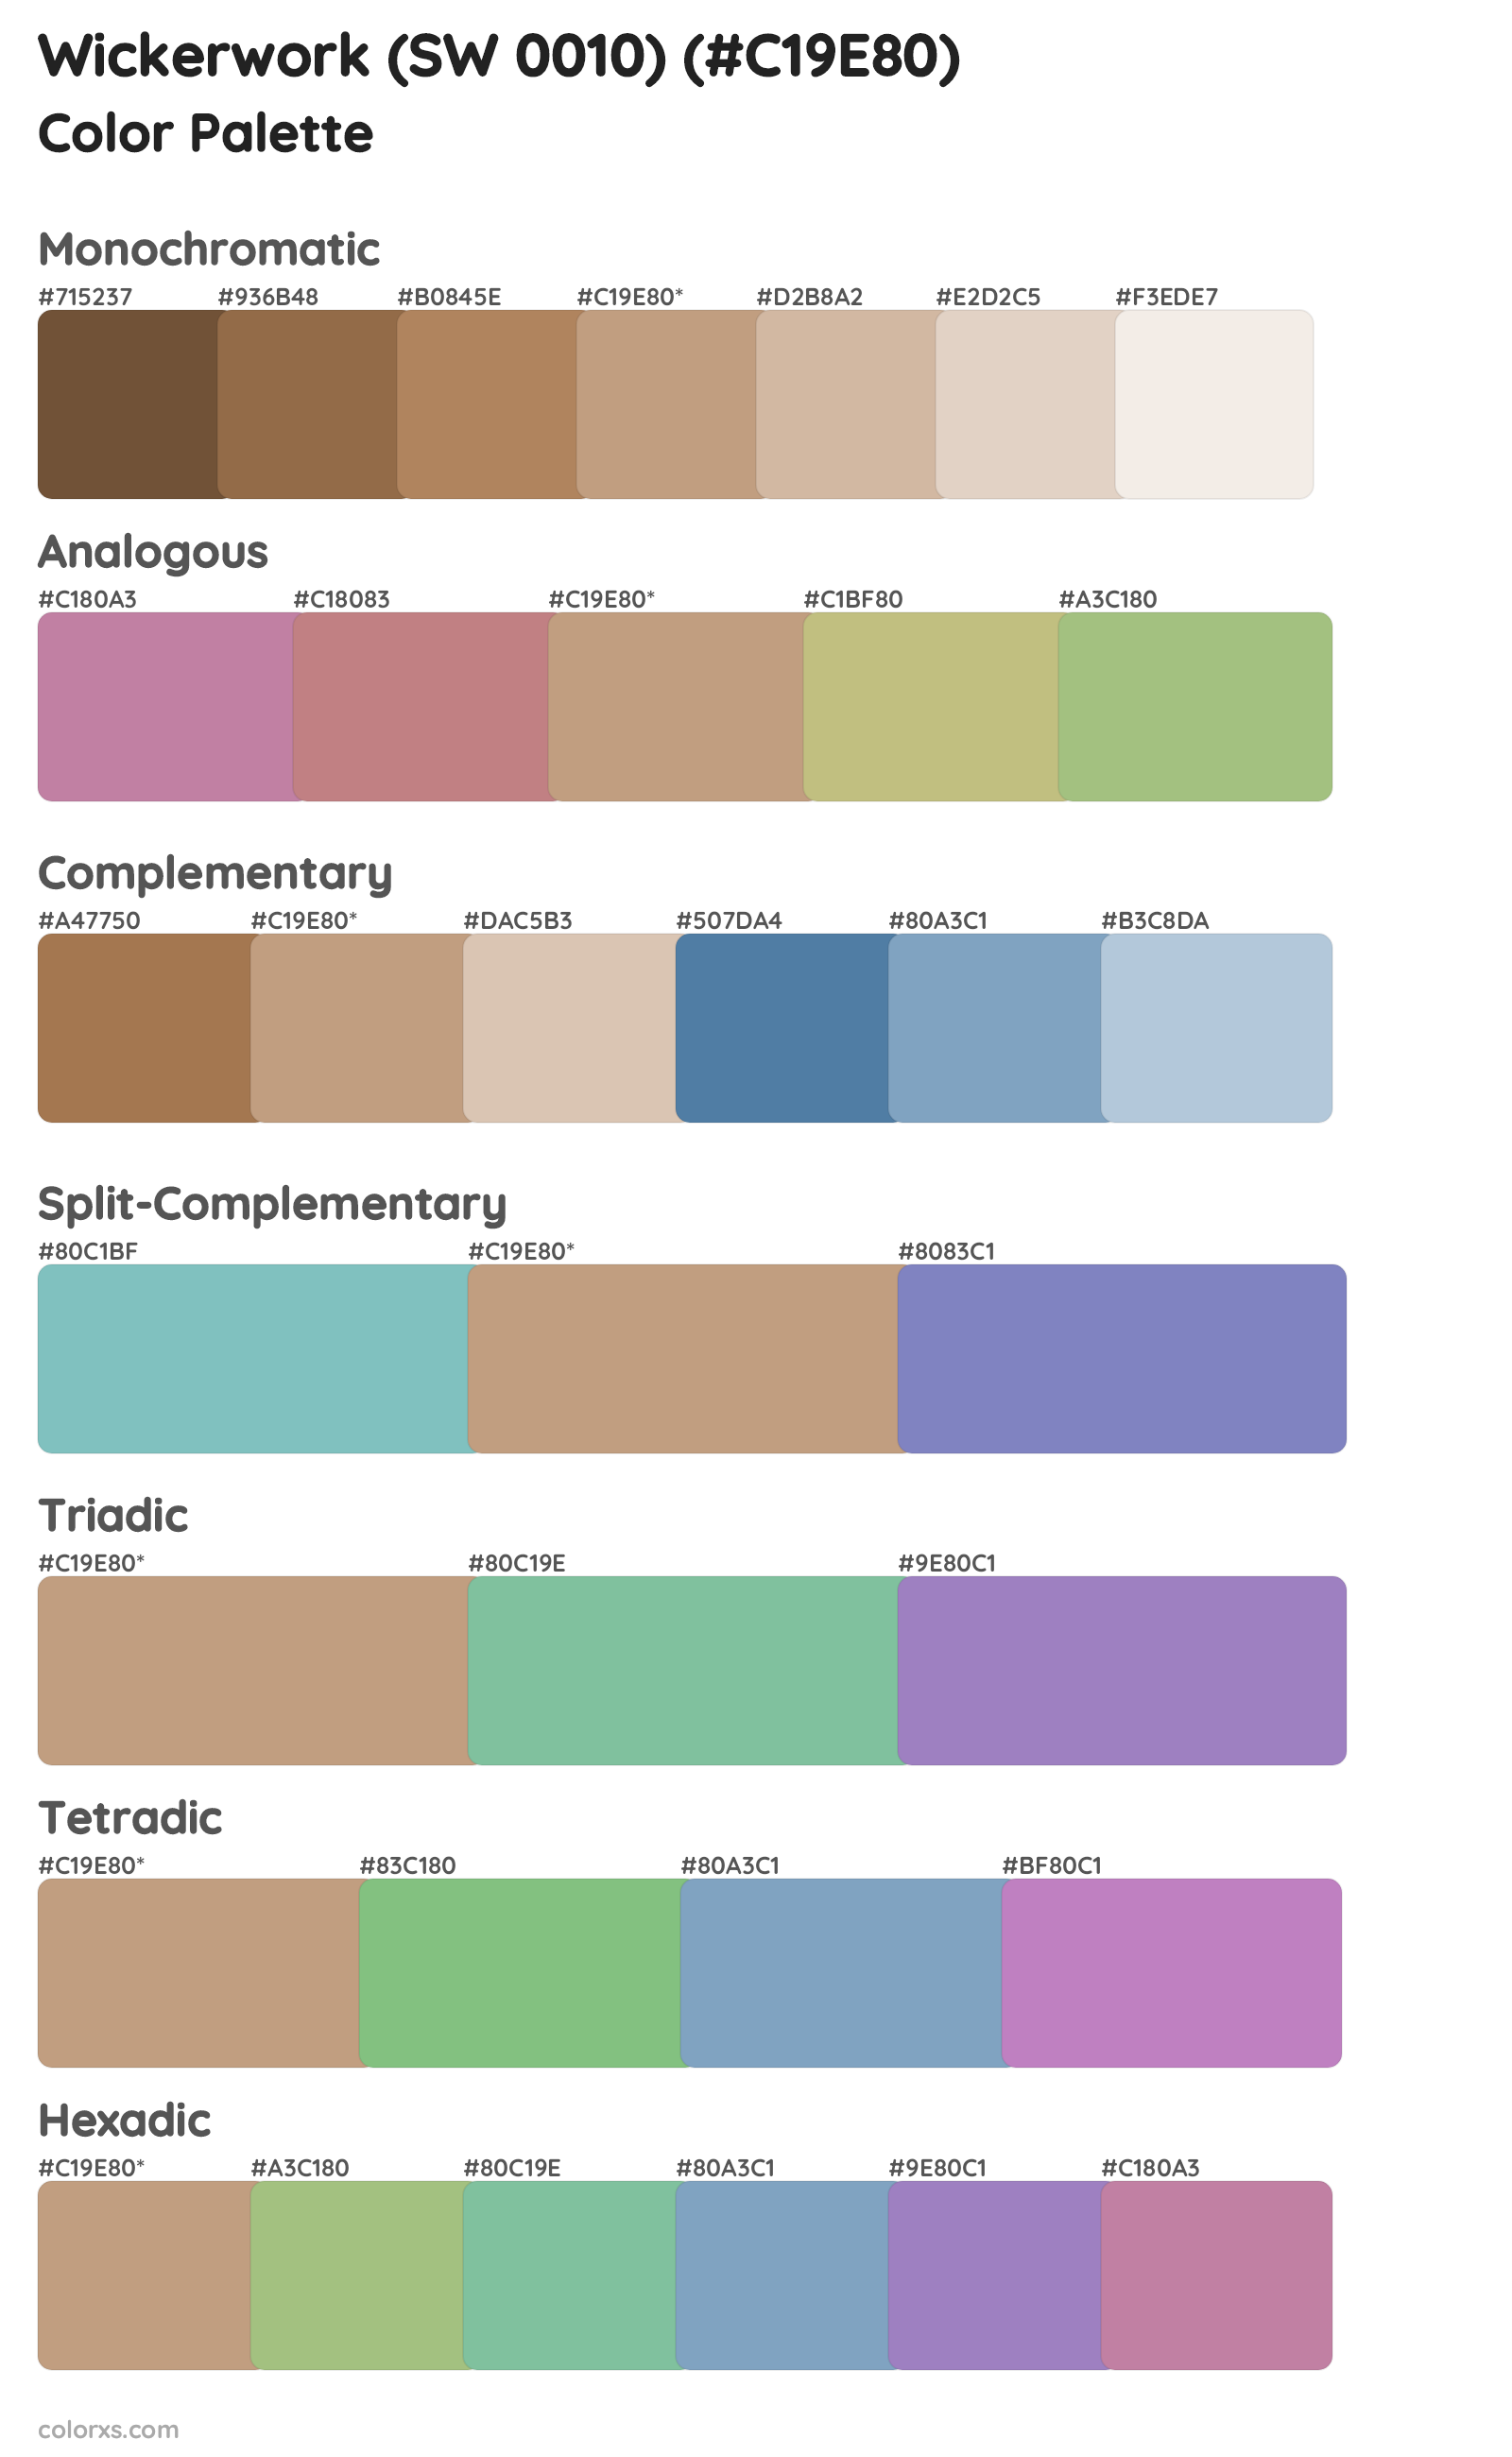 Wickerwork (SW 0010) Color Scheme Palettes